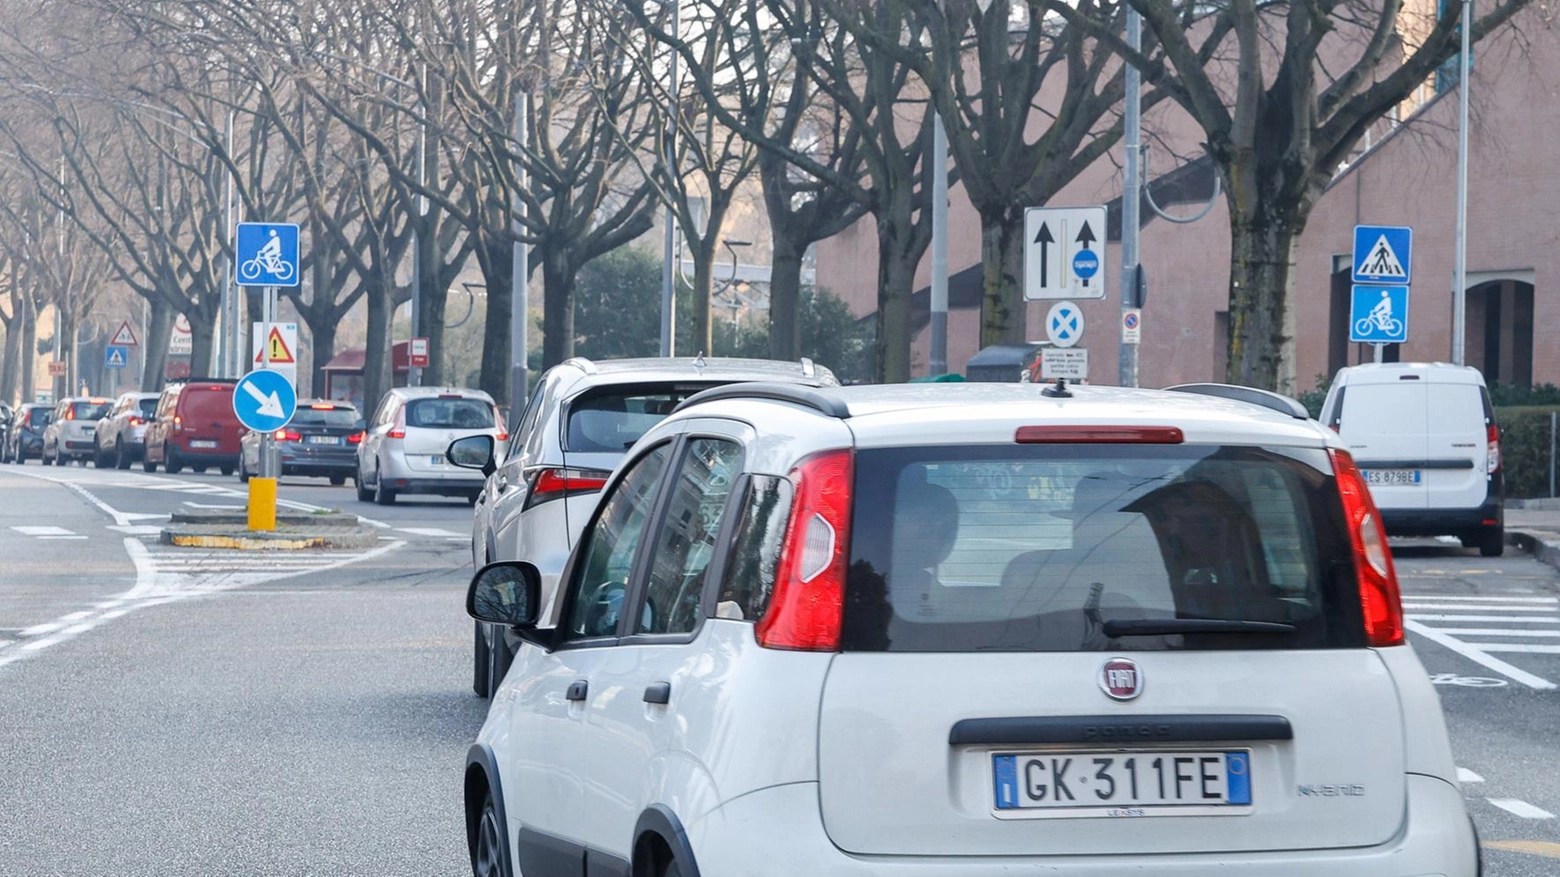 Ferrara 30, Fiab lancia il comitato : "Obiettivo zero morti sulle strade. Più sicurezza e meno inquinamento"